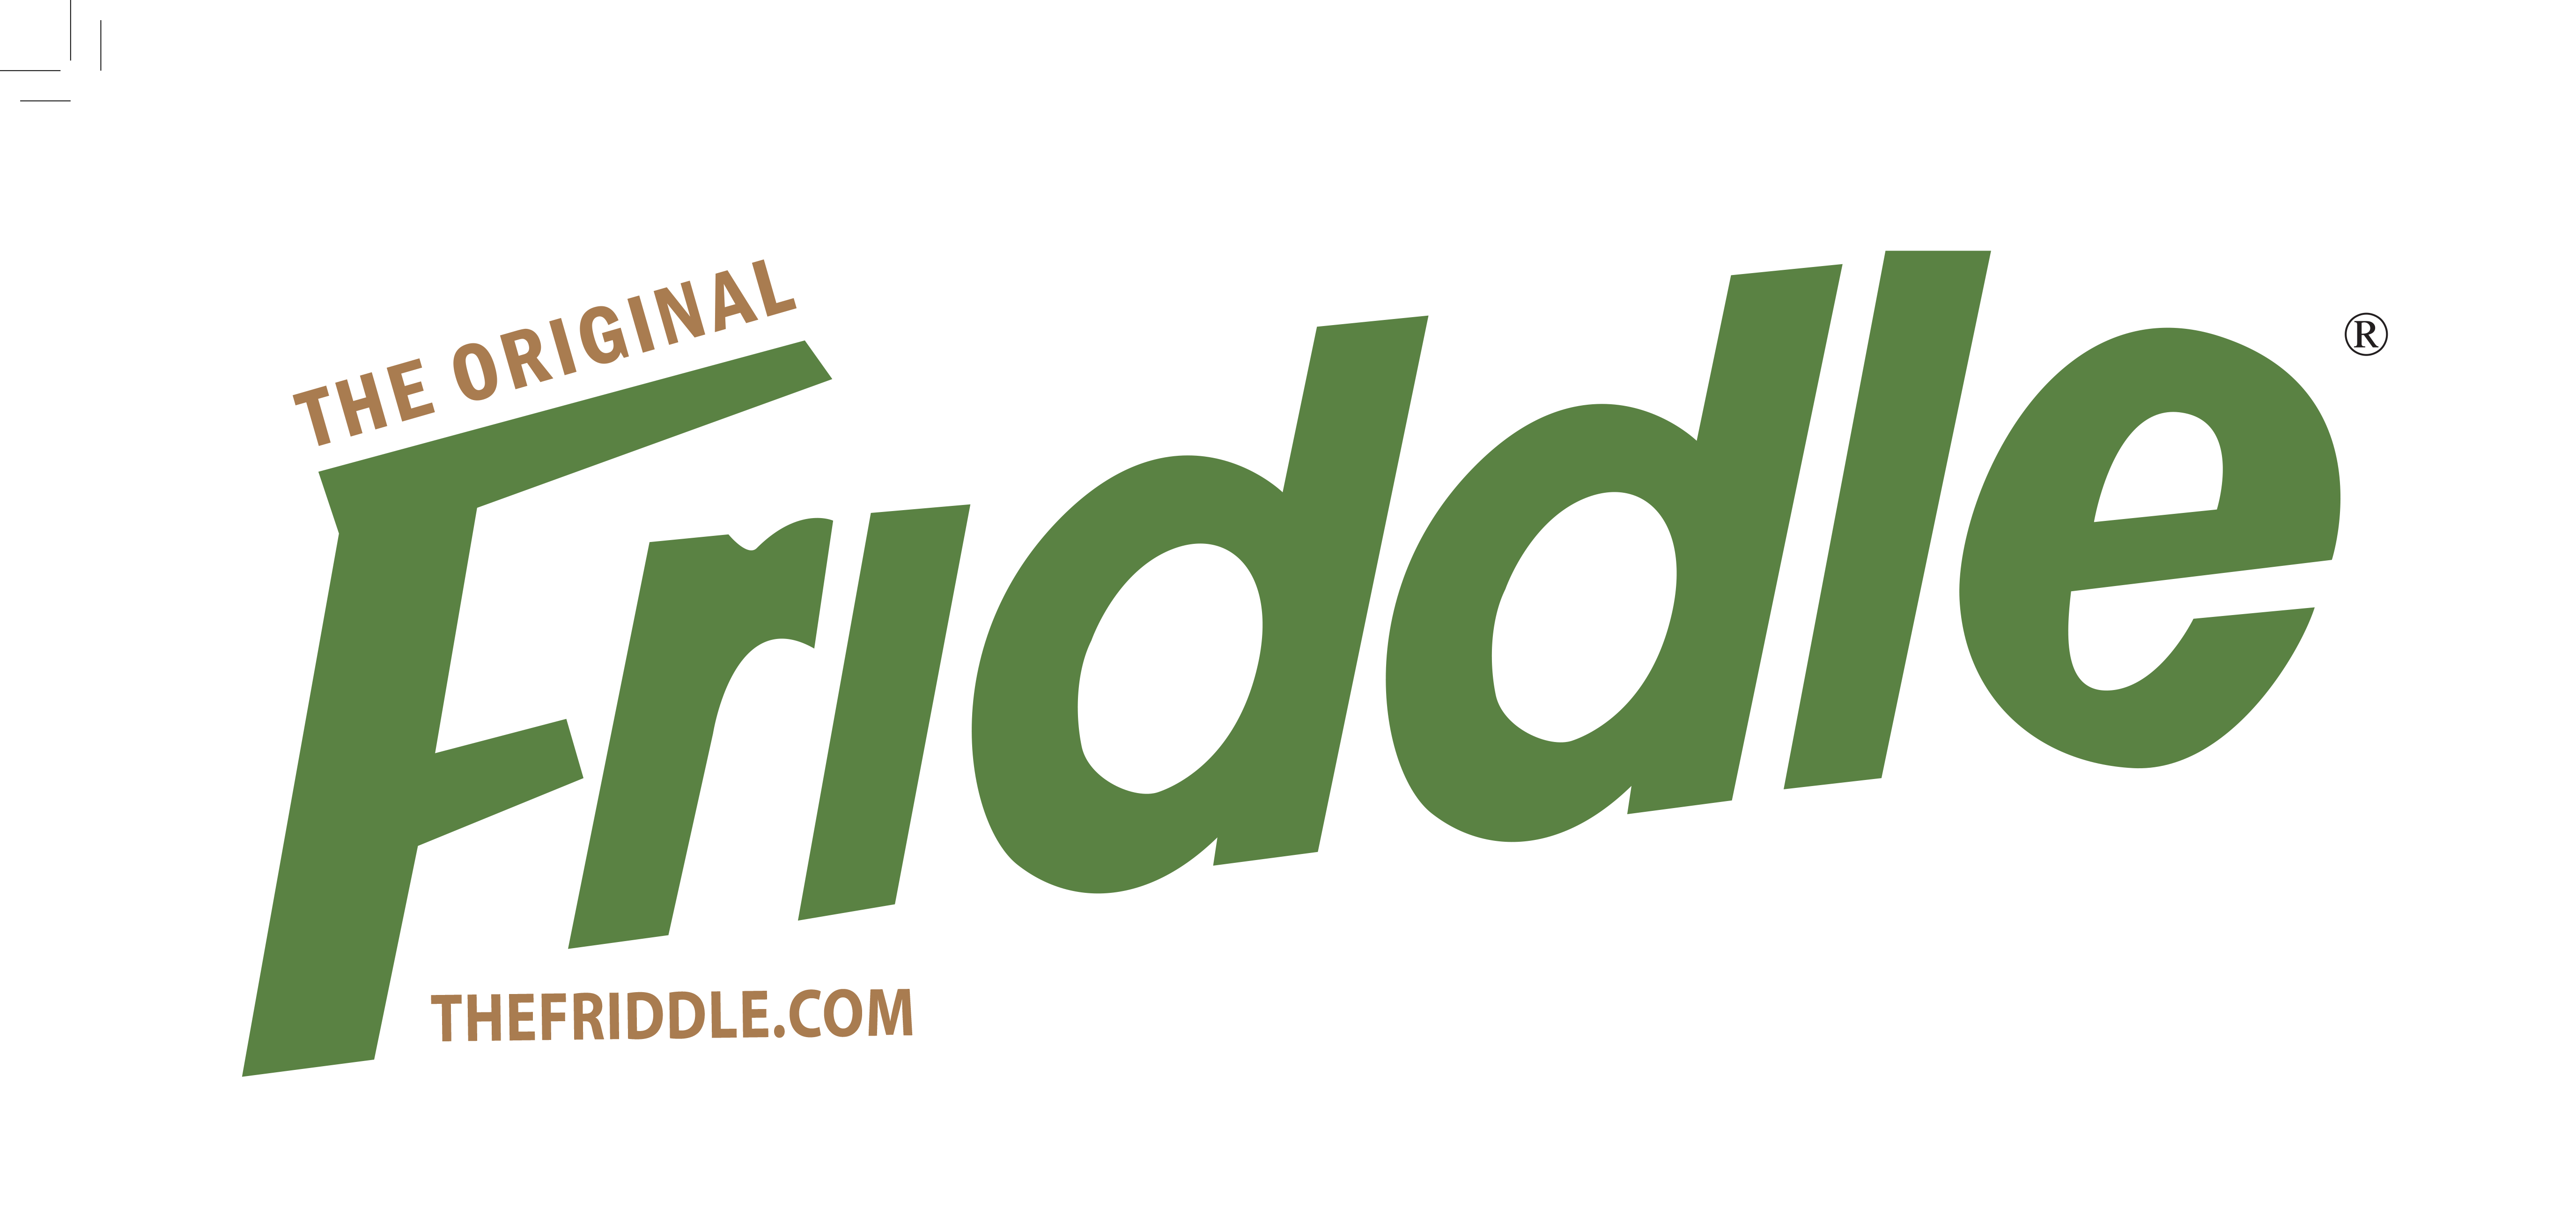 The Original Friddle Co